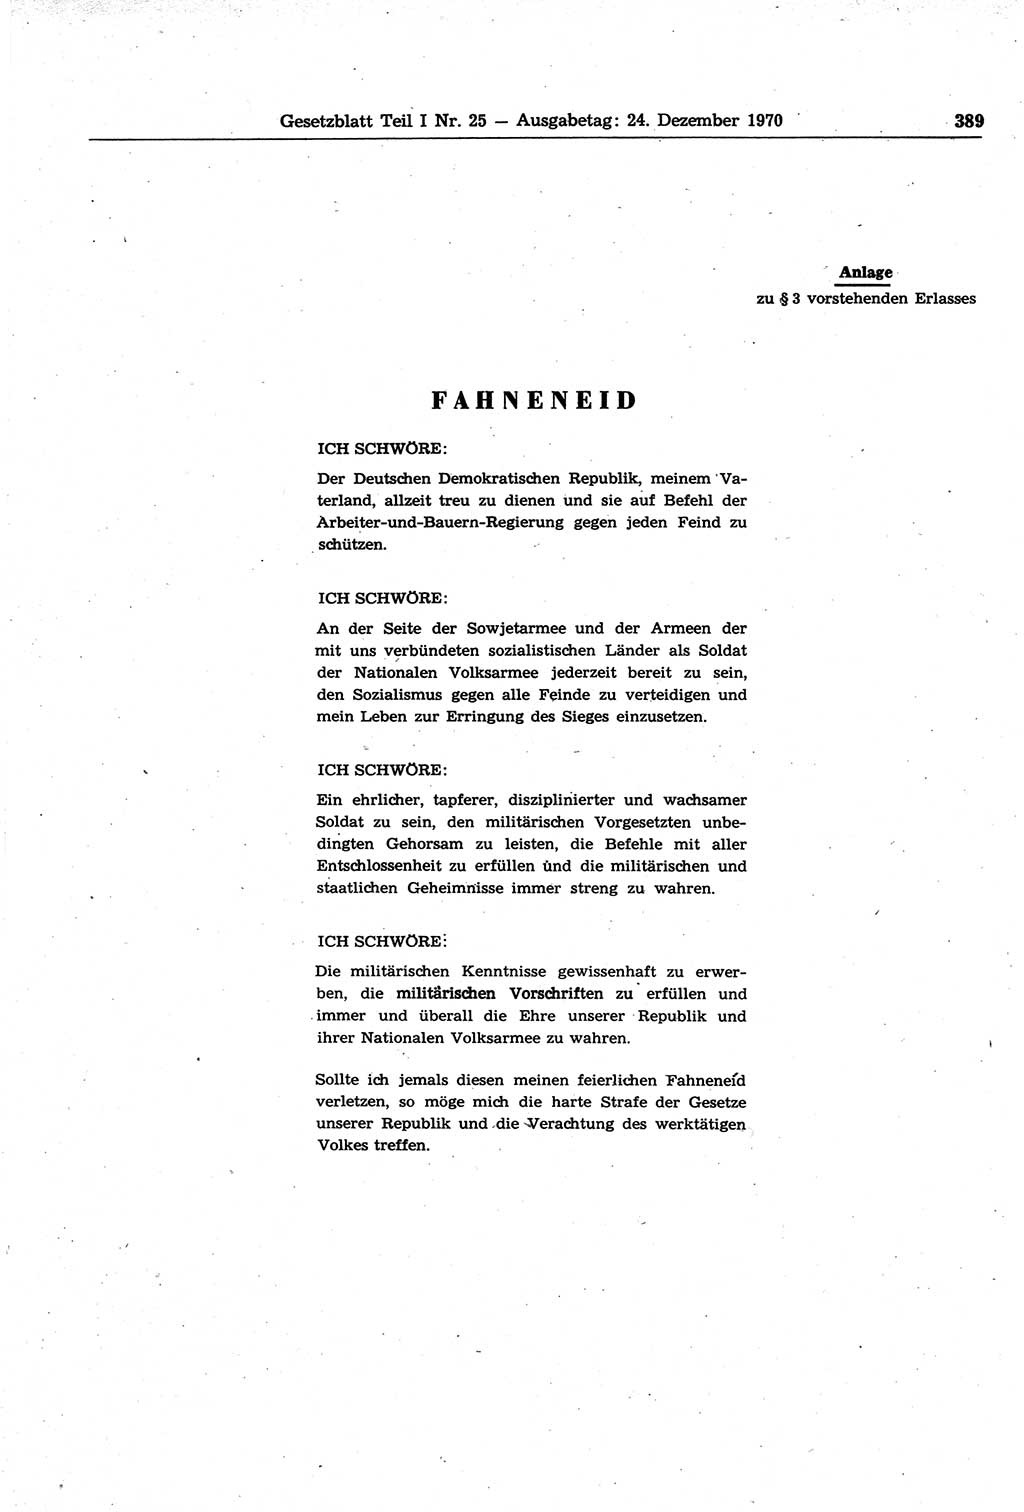 Gesetzblatt (GBl.) der Deutschen Demokratischen Republik (DDR) Teil Ⅰ 1970, Seite 389 (GBl. DDR Ⅰ 1970, S. 389)